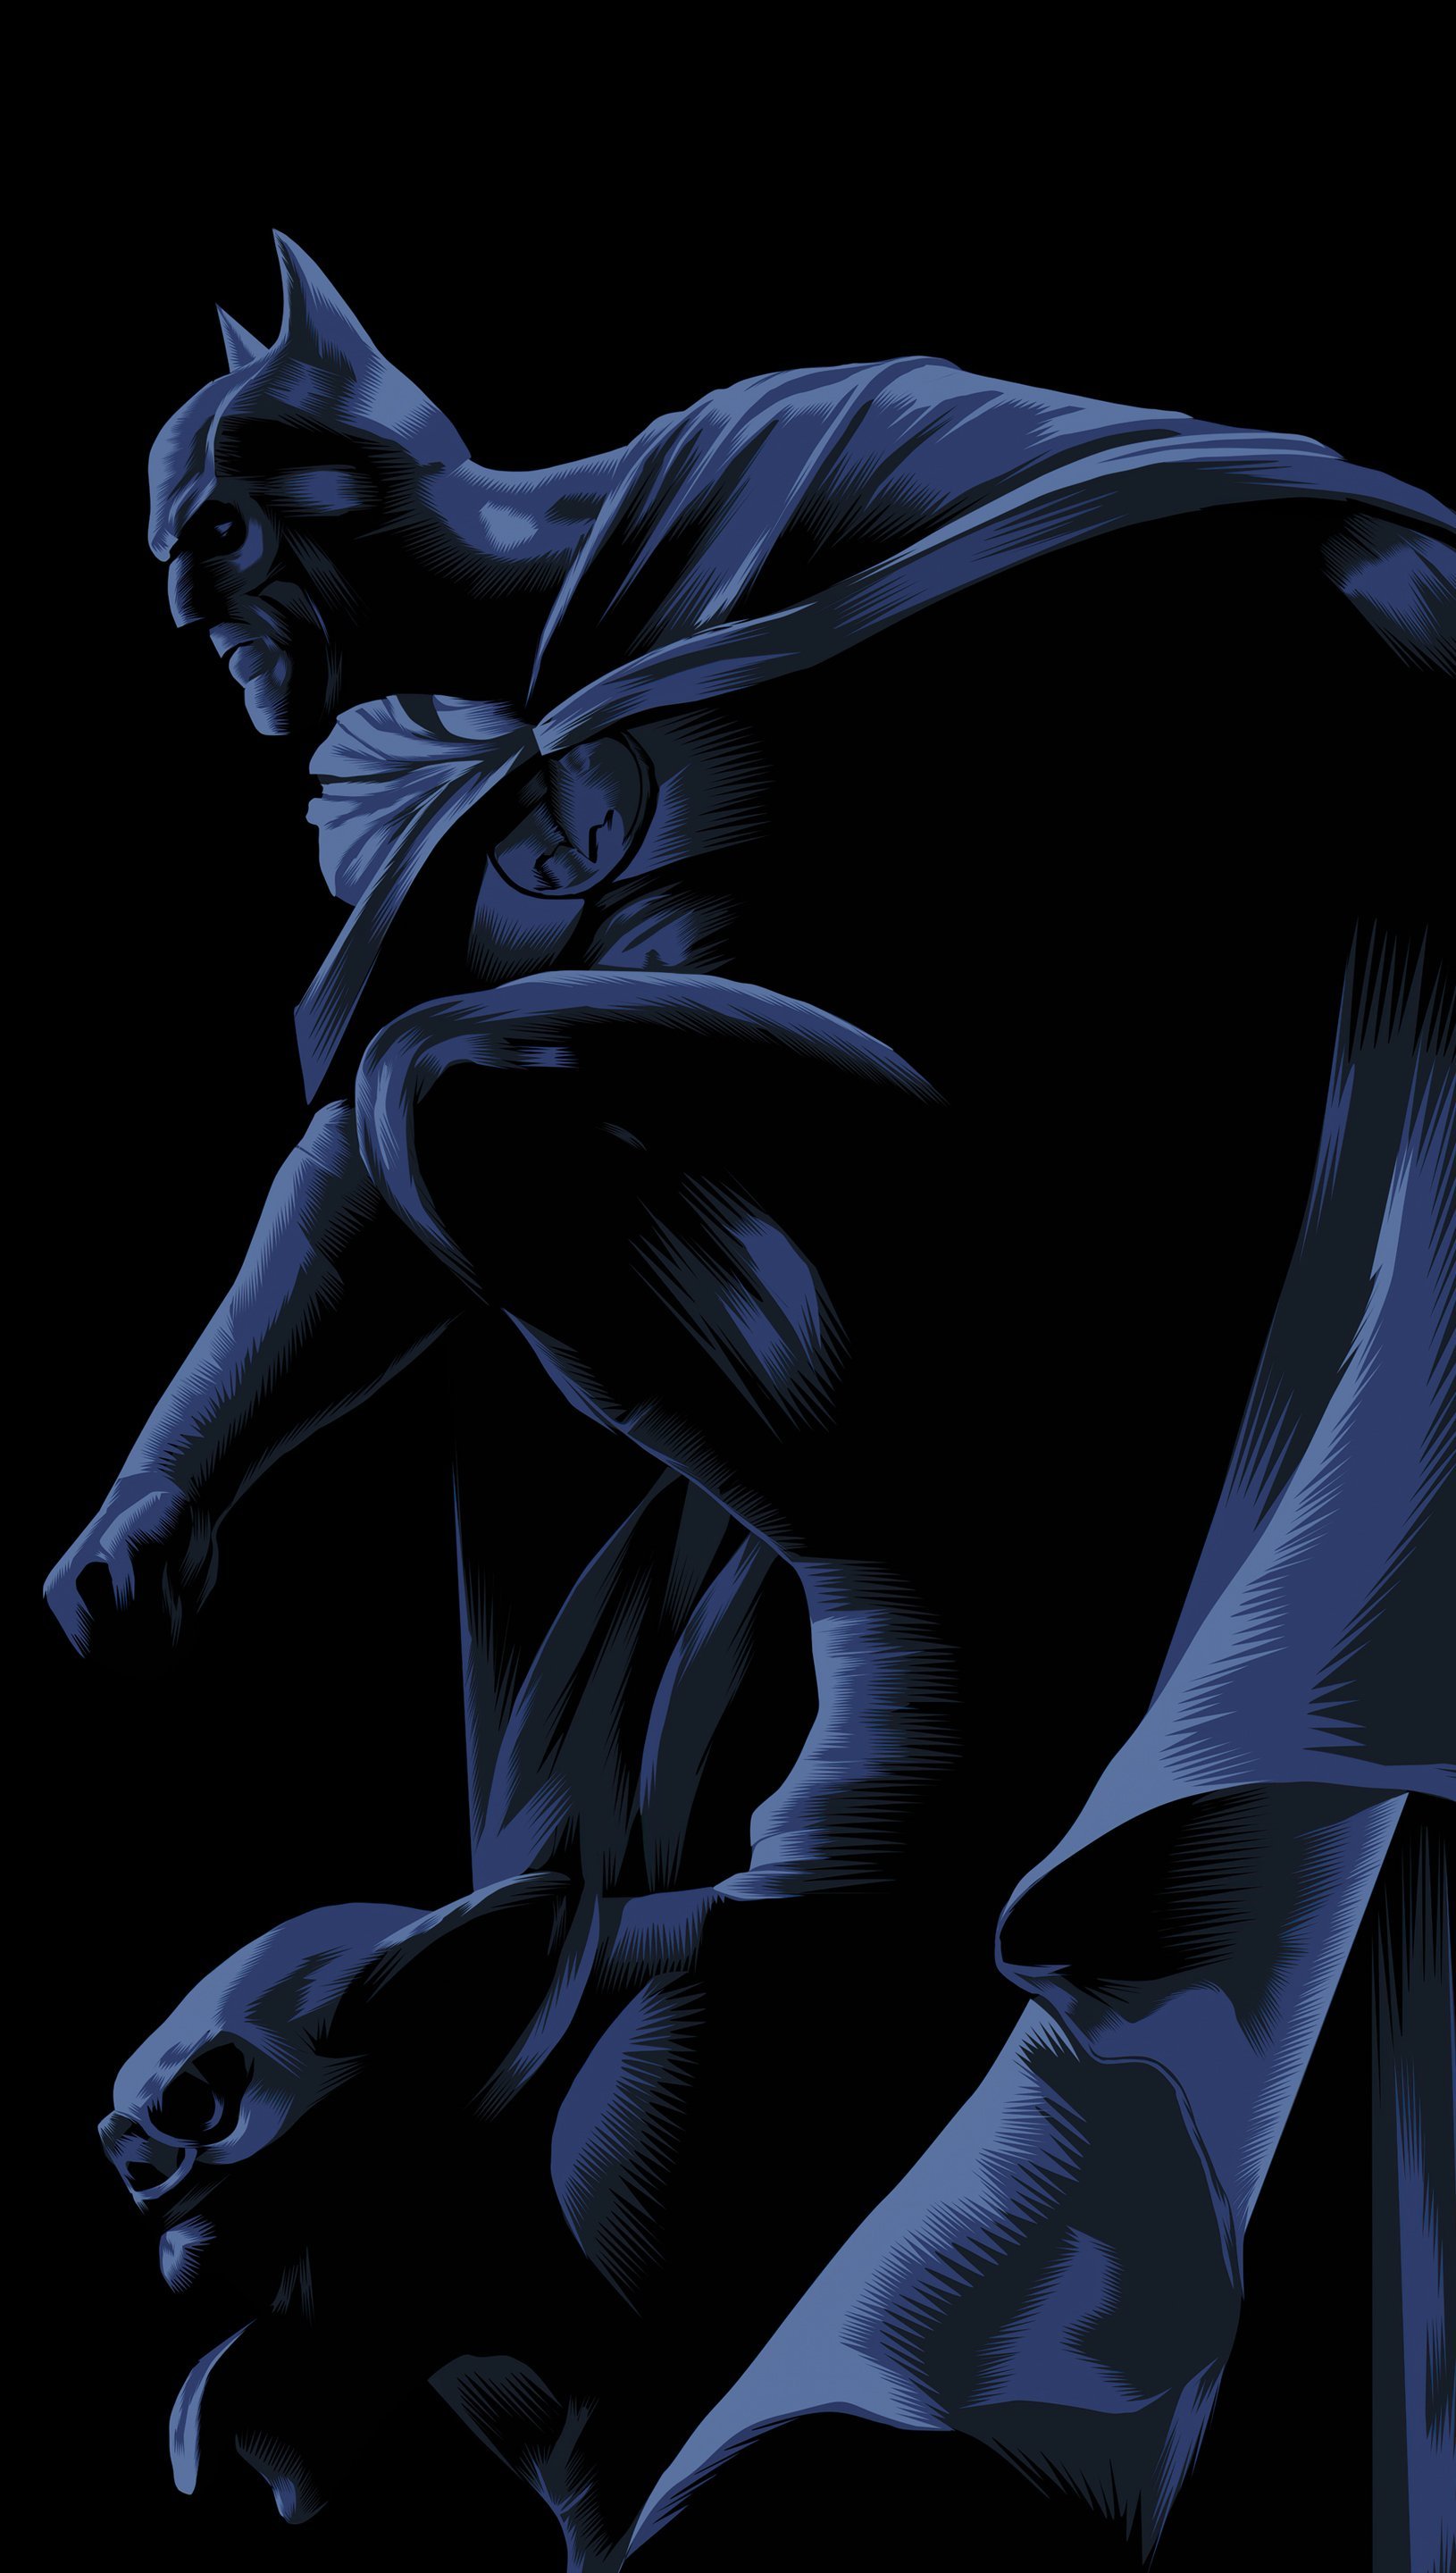 Wallpaper Batman Dark Knight Illustration Vertical